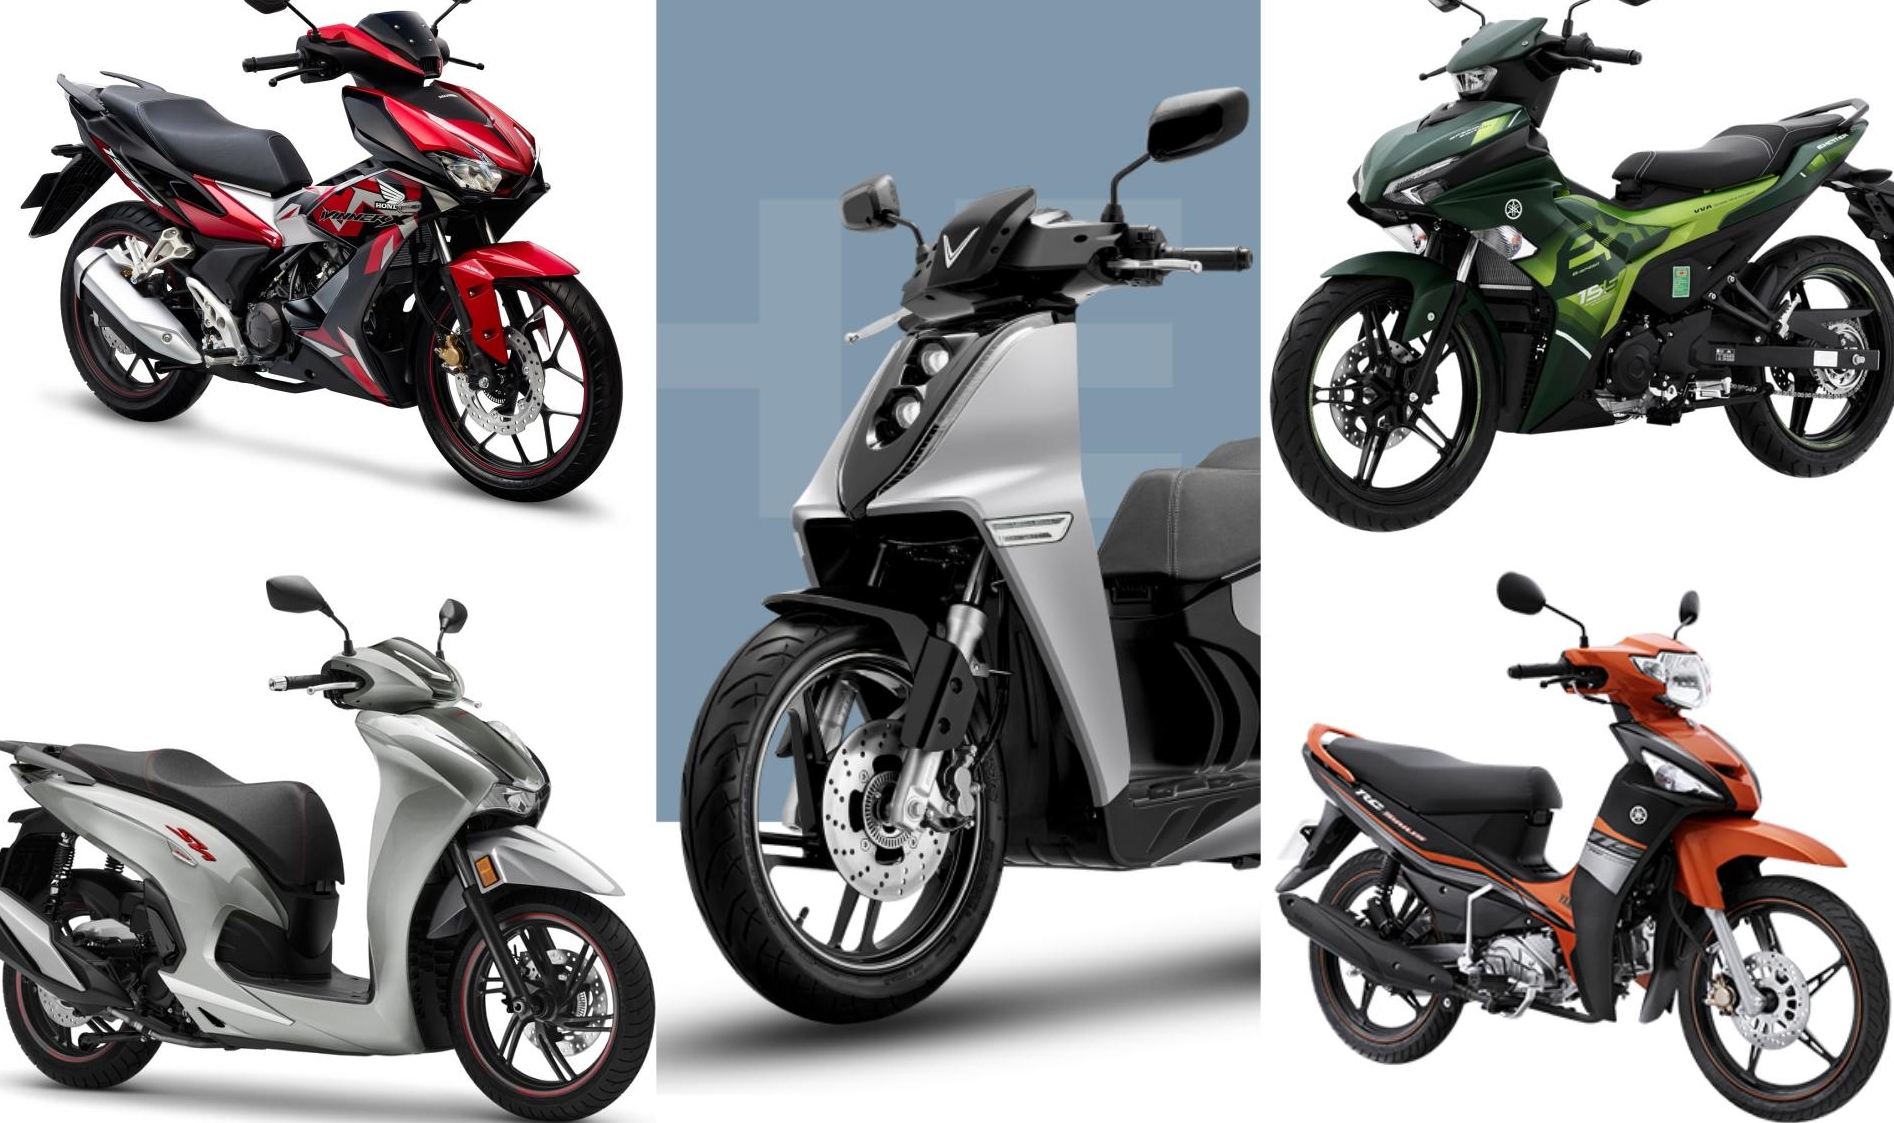 Honda CB150X  môtô adventure giá 83 triệu đồng  VnExpress